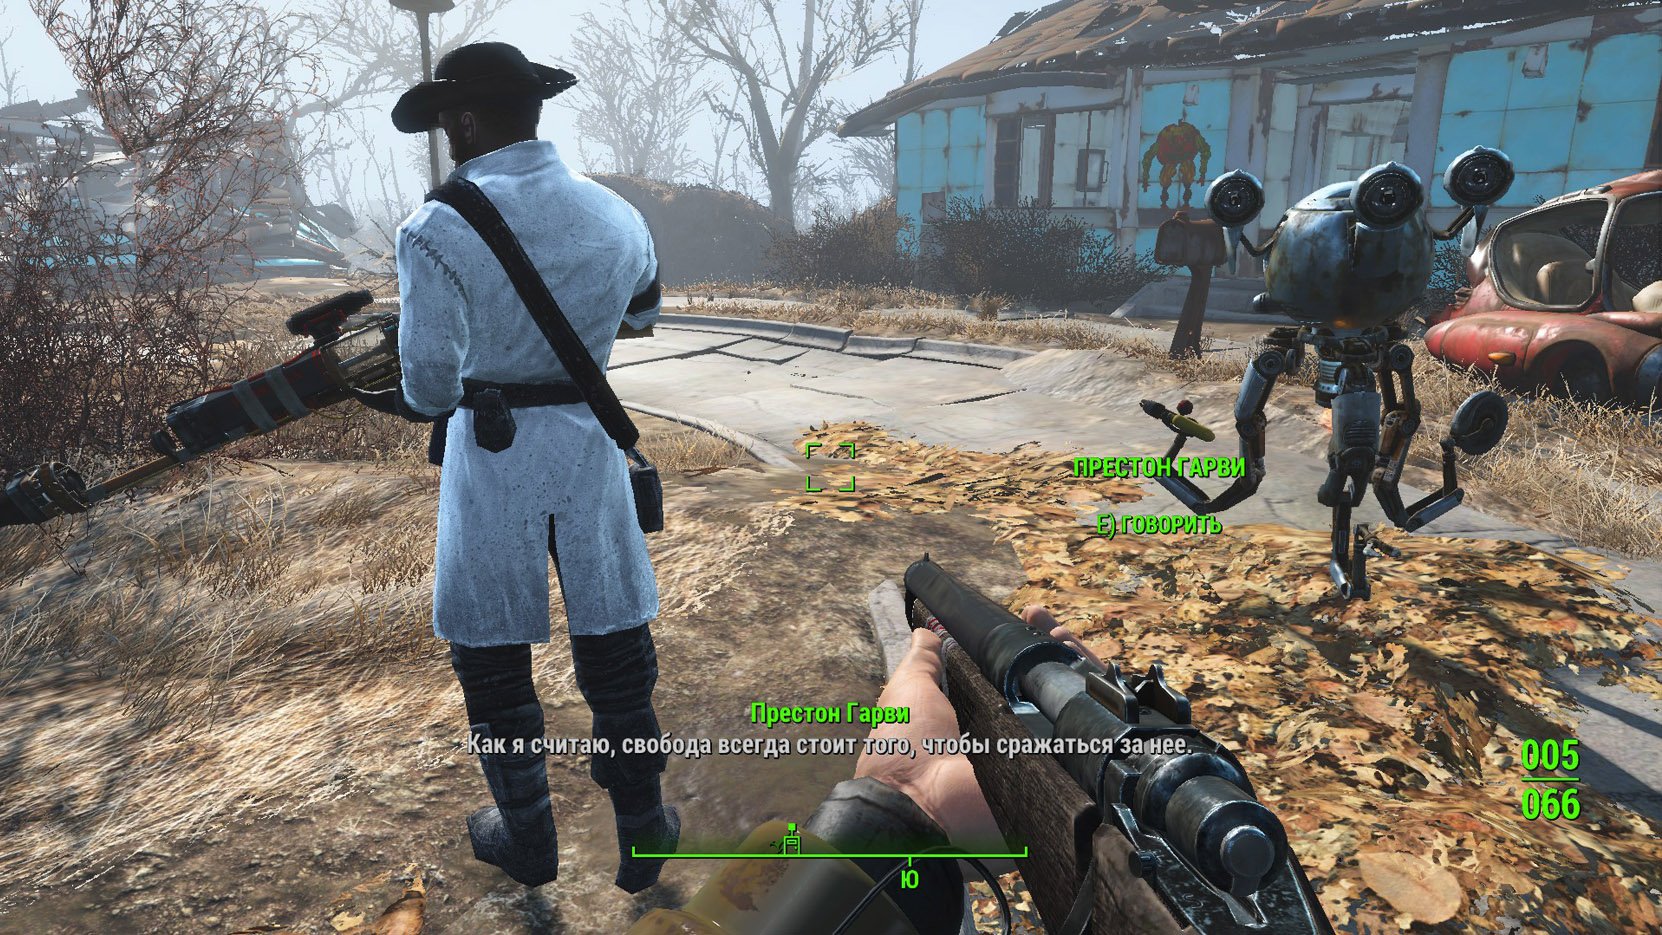 Fallout 4 миссии престона гарви фото 33